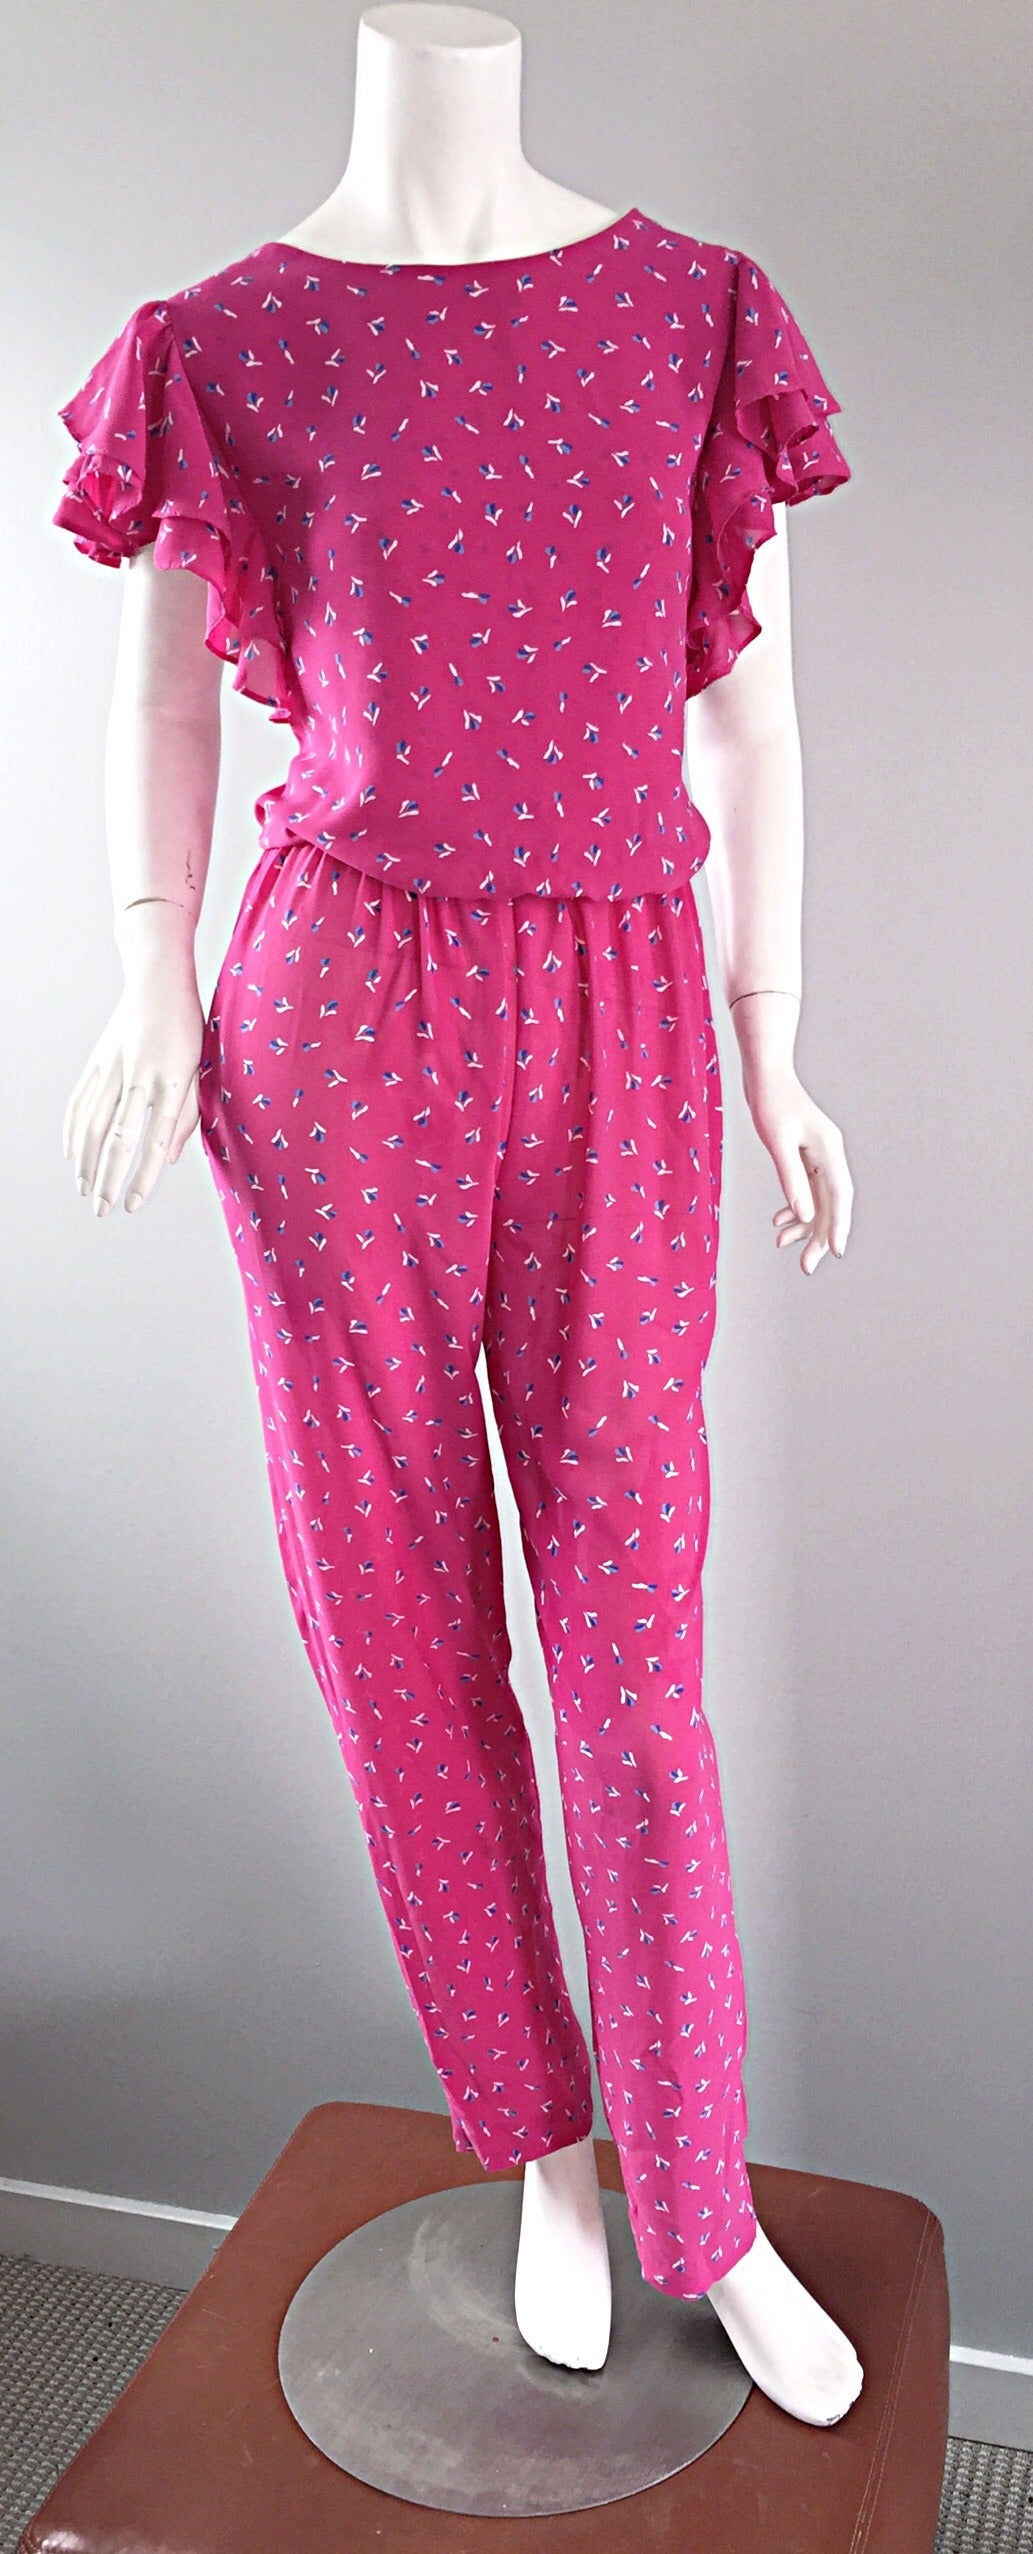 Incredible Vintage Pink Boho Jumpsuit, w/ Ruffles + Flowers / Roses 5